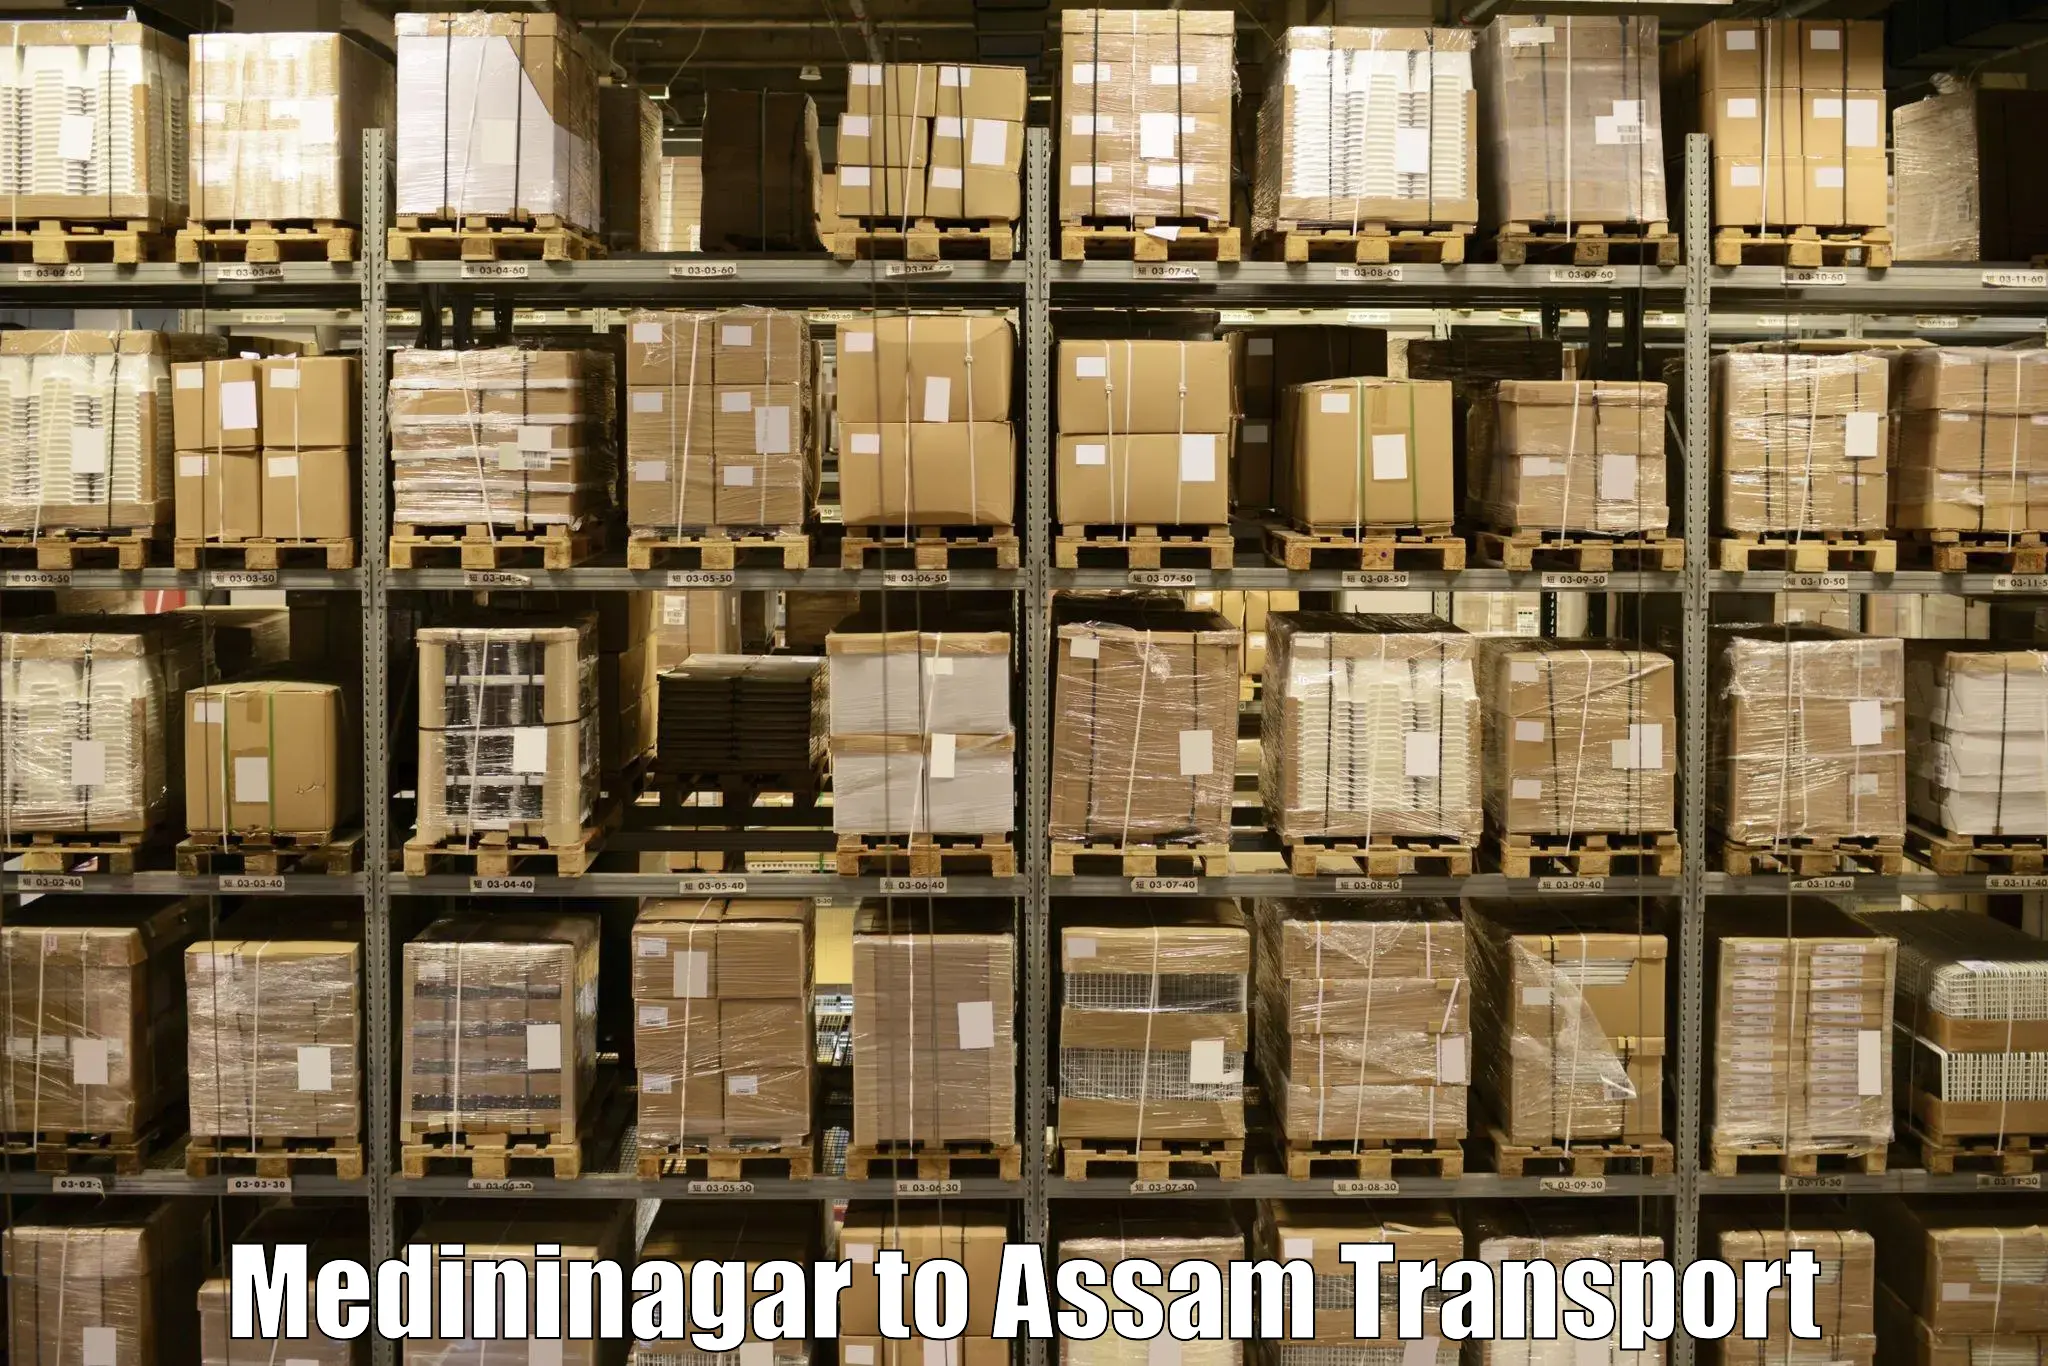 Air freight transport services Medininagar to Dhupdhara